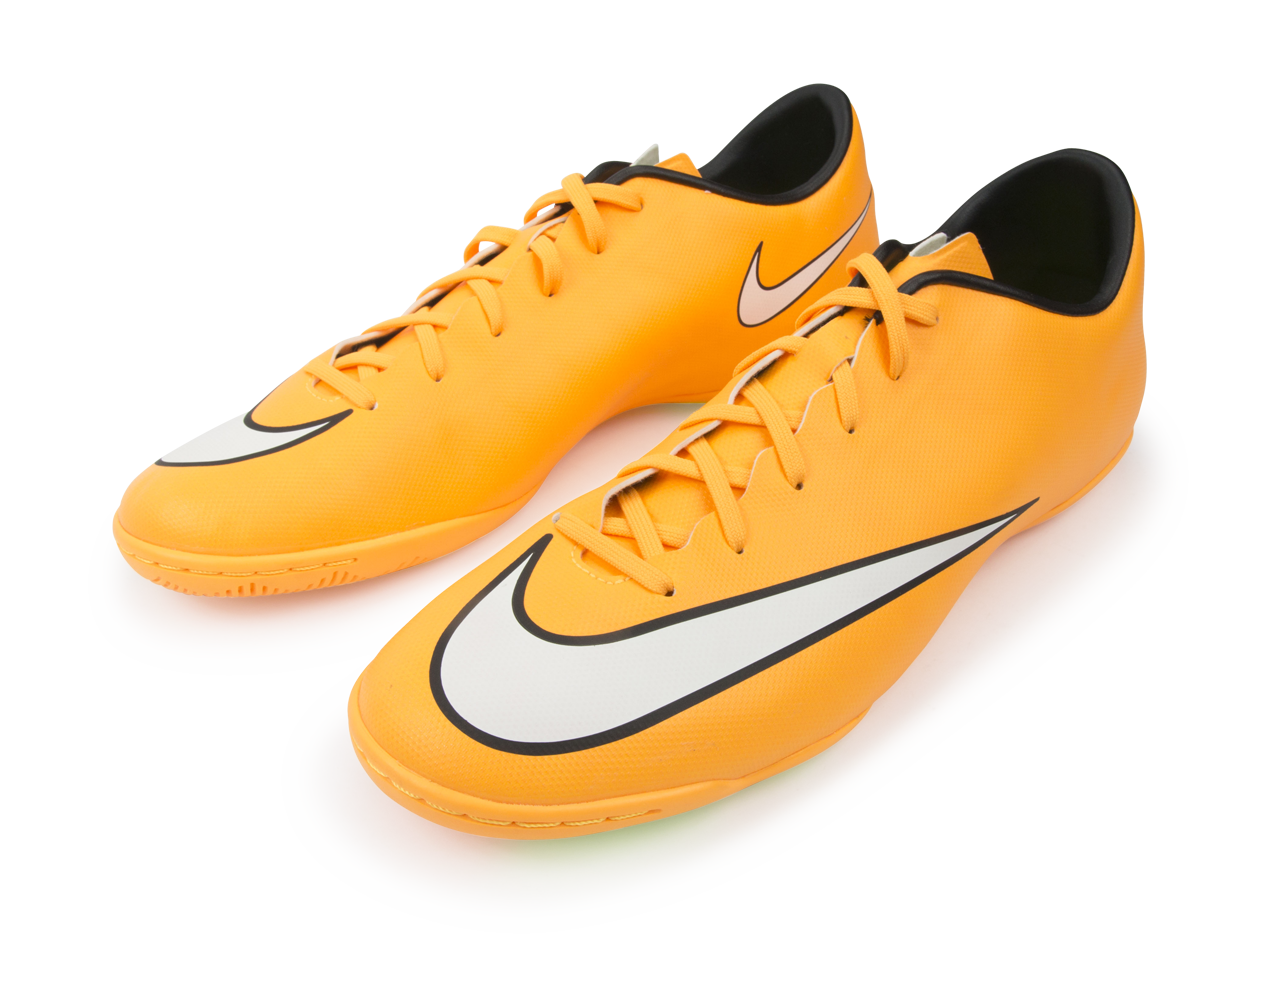 Nike Men's Mercurial Victory V Indoor Soccer Shoes Laser Orange/Black/Volt/White